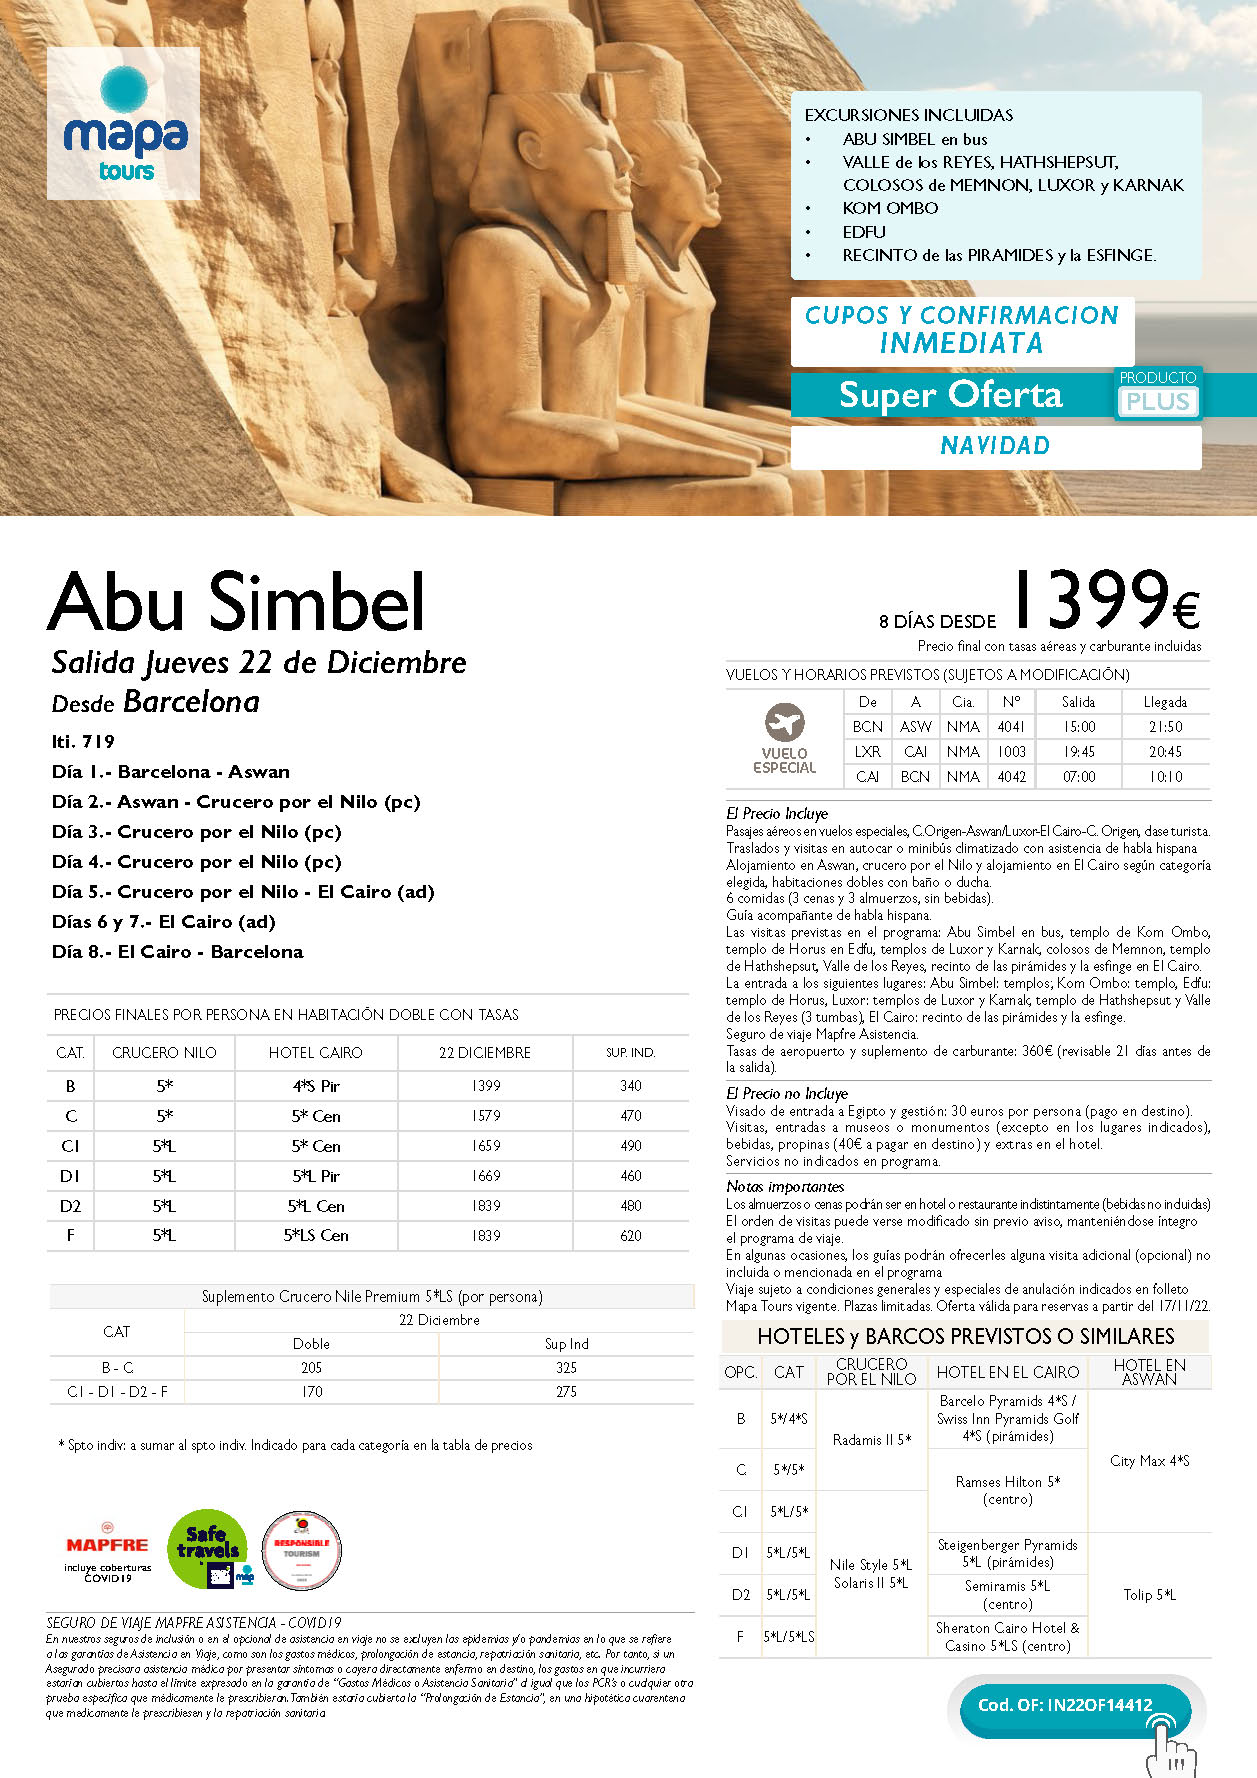 Oferta Mapa Tours Navidad 2022 en Egipto Abu Simbel 8 dias salida el 22 de Diciembre en vuelo especial directo desde Barcelona rebajado